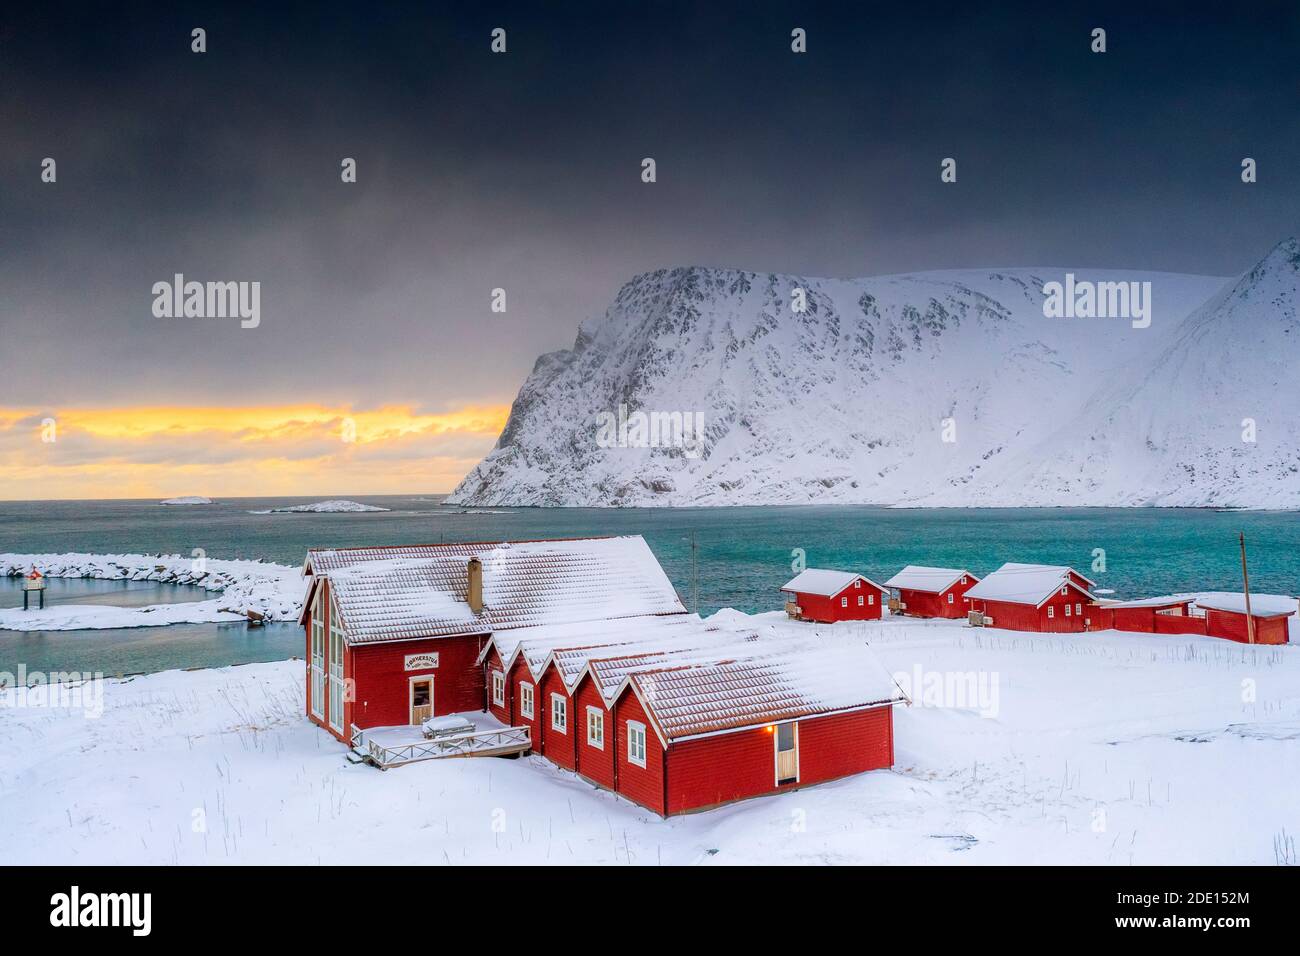 Coucher de soleil d'hiver sur la mer arctique et cabines de pêcheurs dans la neige, Sorvaer, Soroya Island, Hasvik, Troms og Finnmark, Norvège, Scandinavie, Europe Banque D'Images